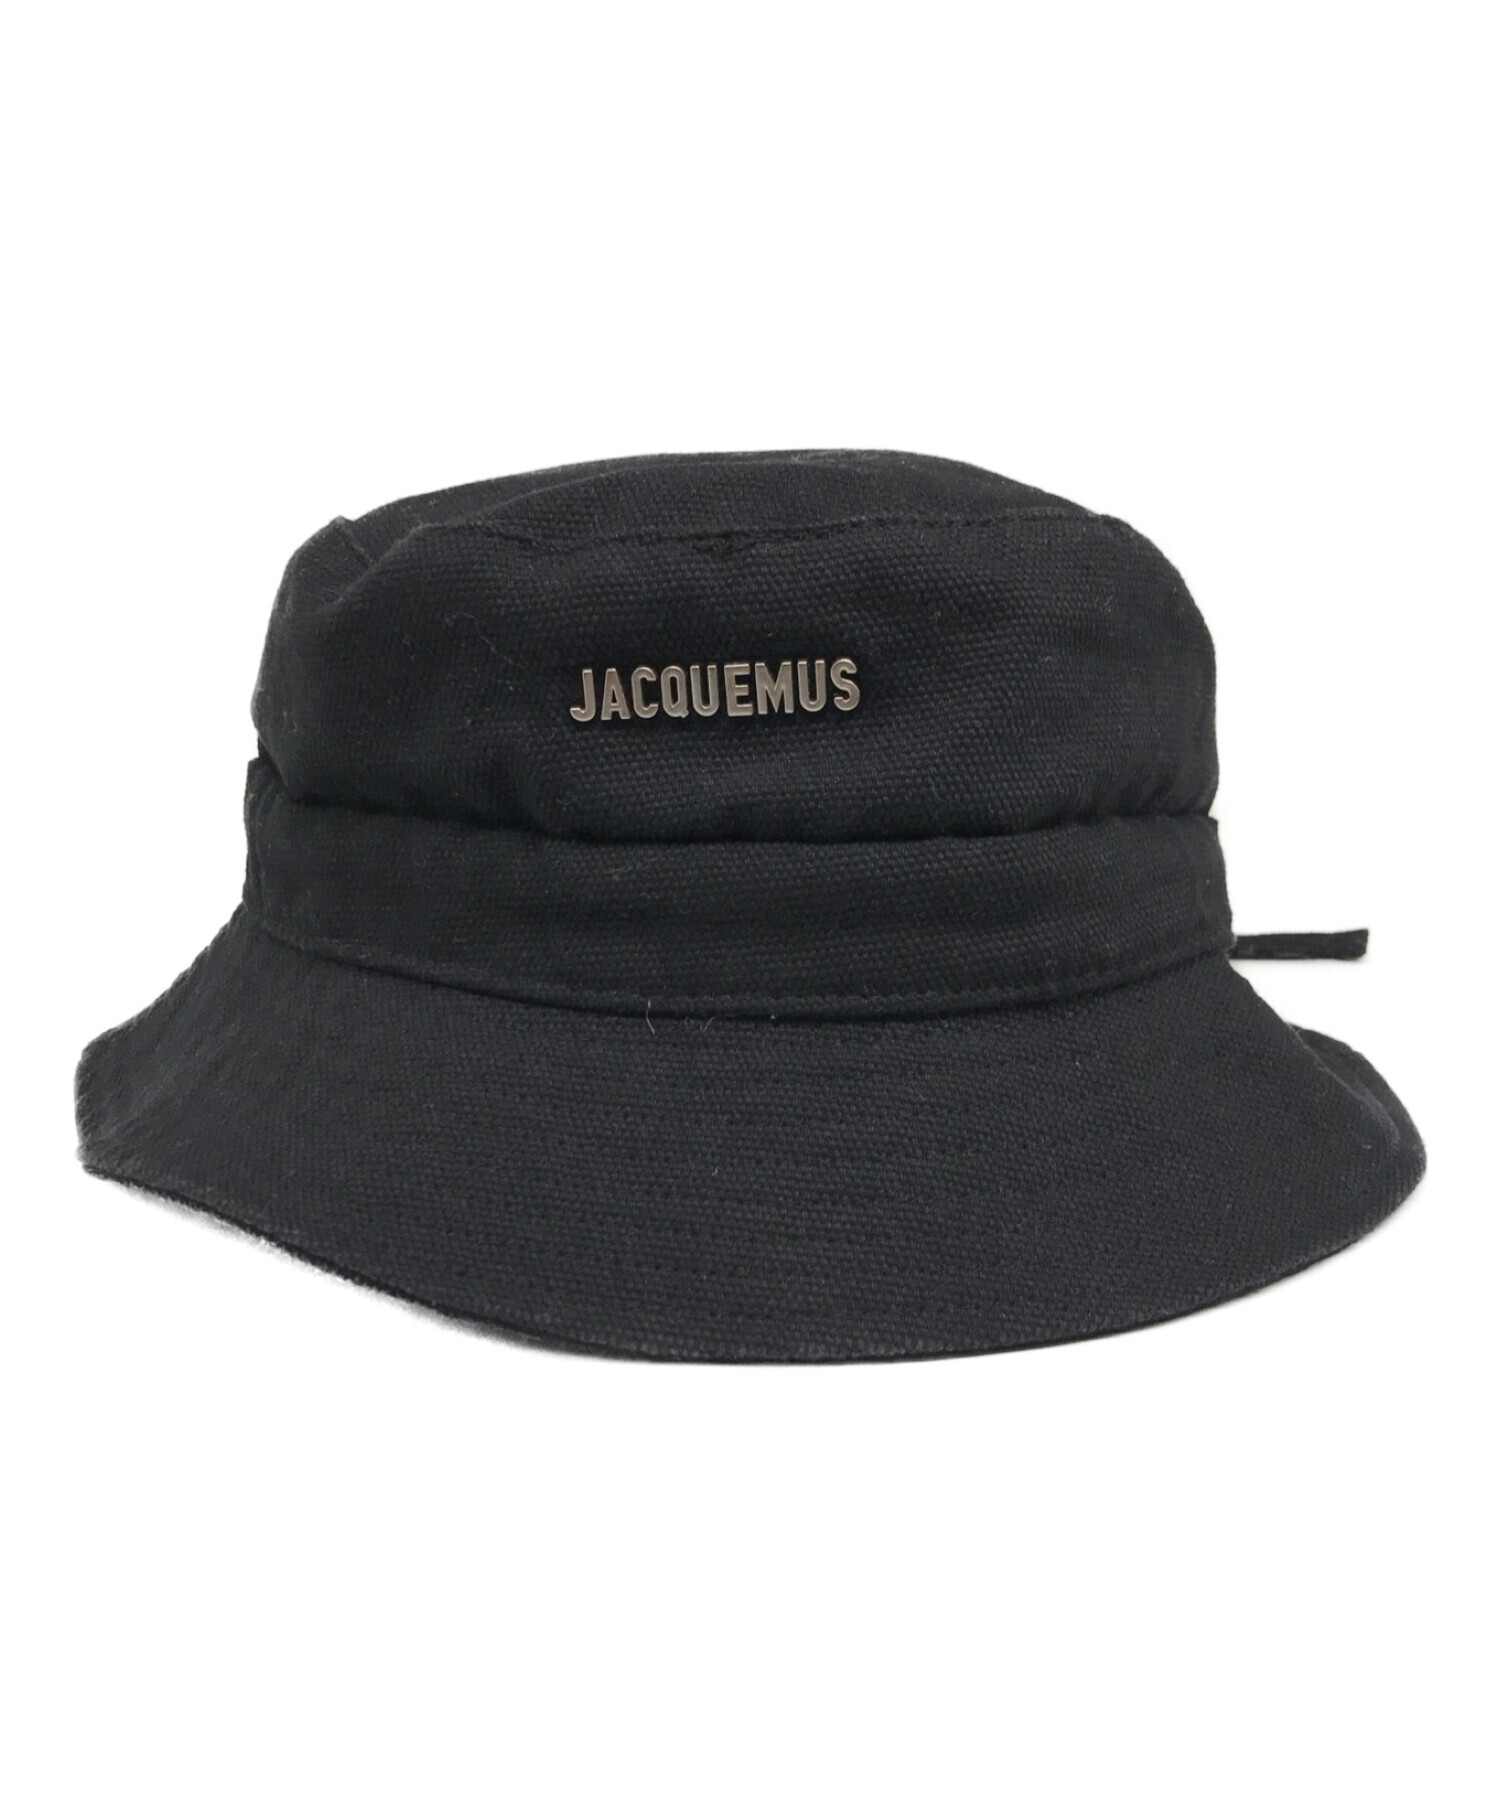 Jacquemus バケットハット サイズ60 ジャックムス 割引オンライン